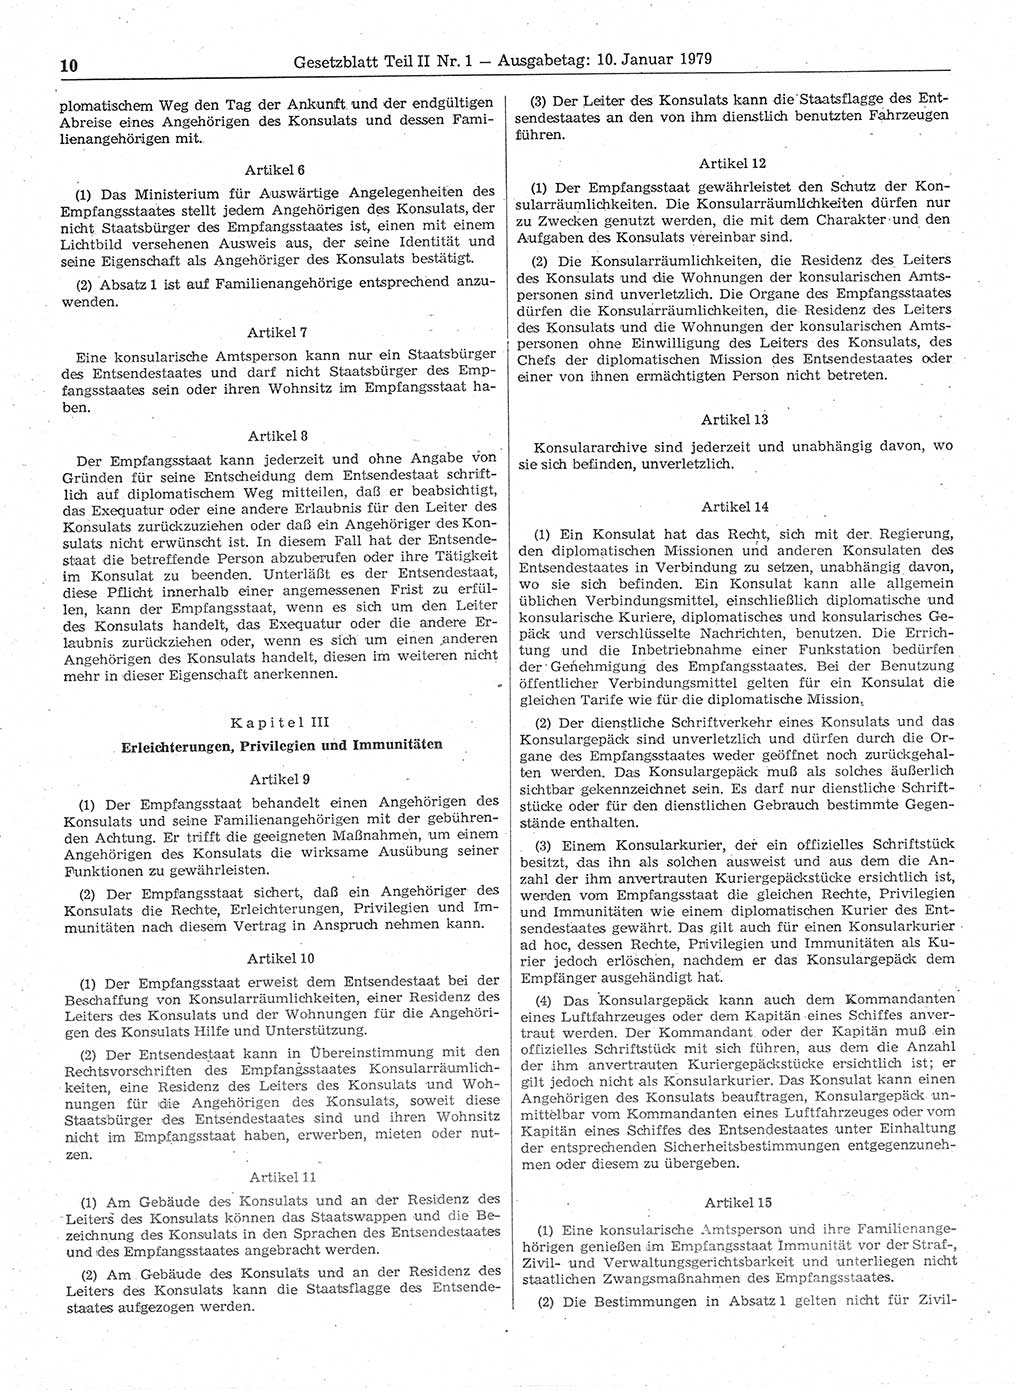 Gesetzblatt (GBl.) der Deutschen Demokratischen Republik (DDR) Teil ⅠⅠ 1979, Seite 10 (GBl. DDR ⅠⅠ 1979, S. 10)